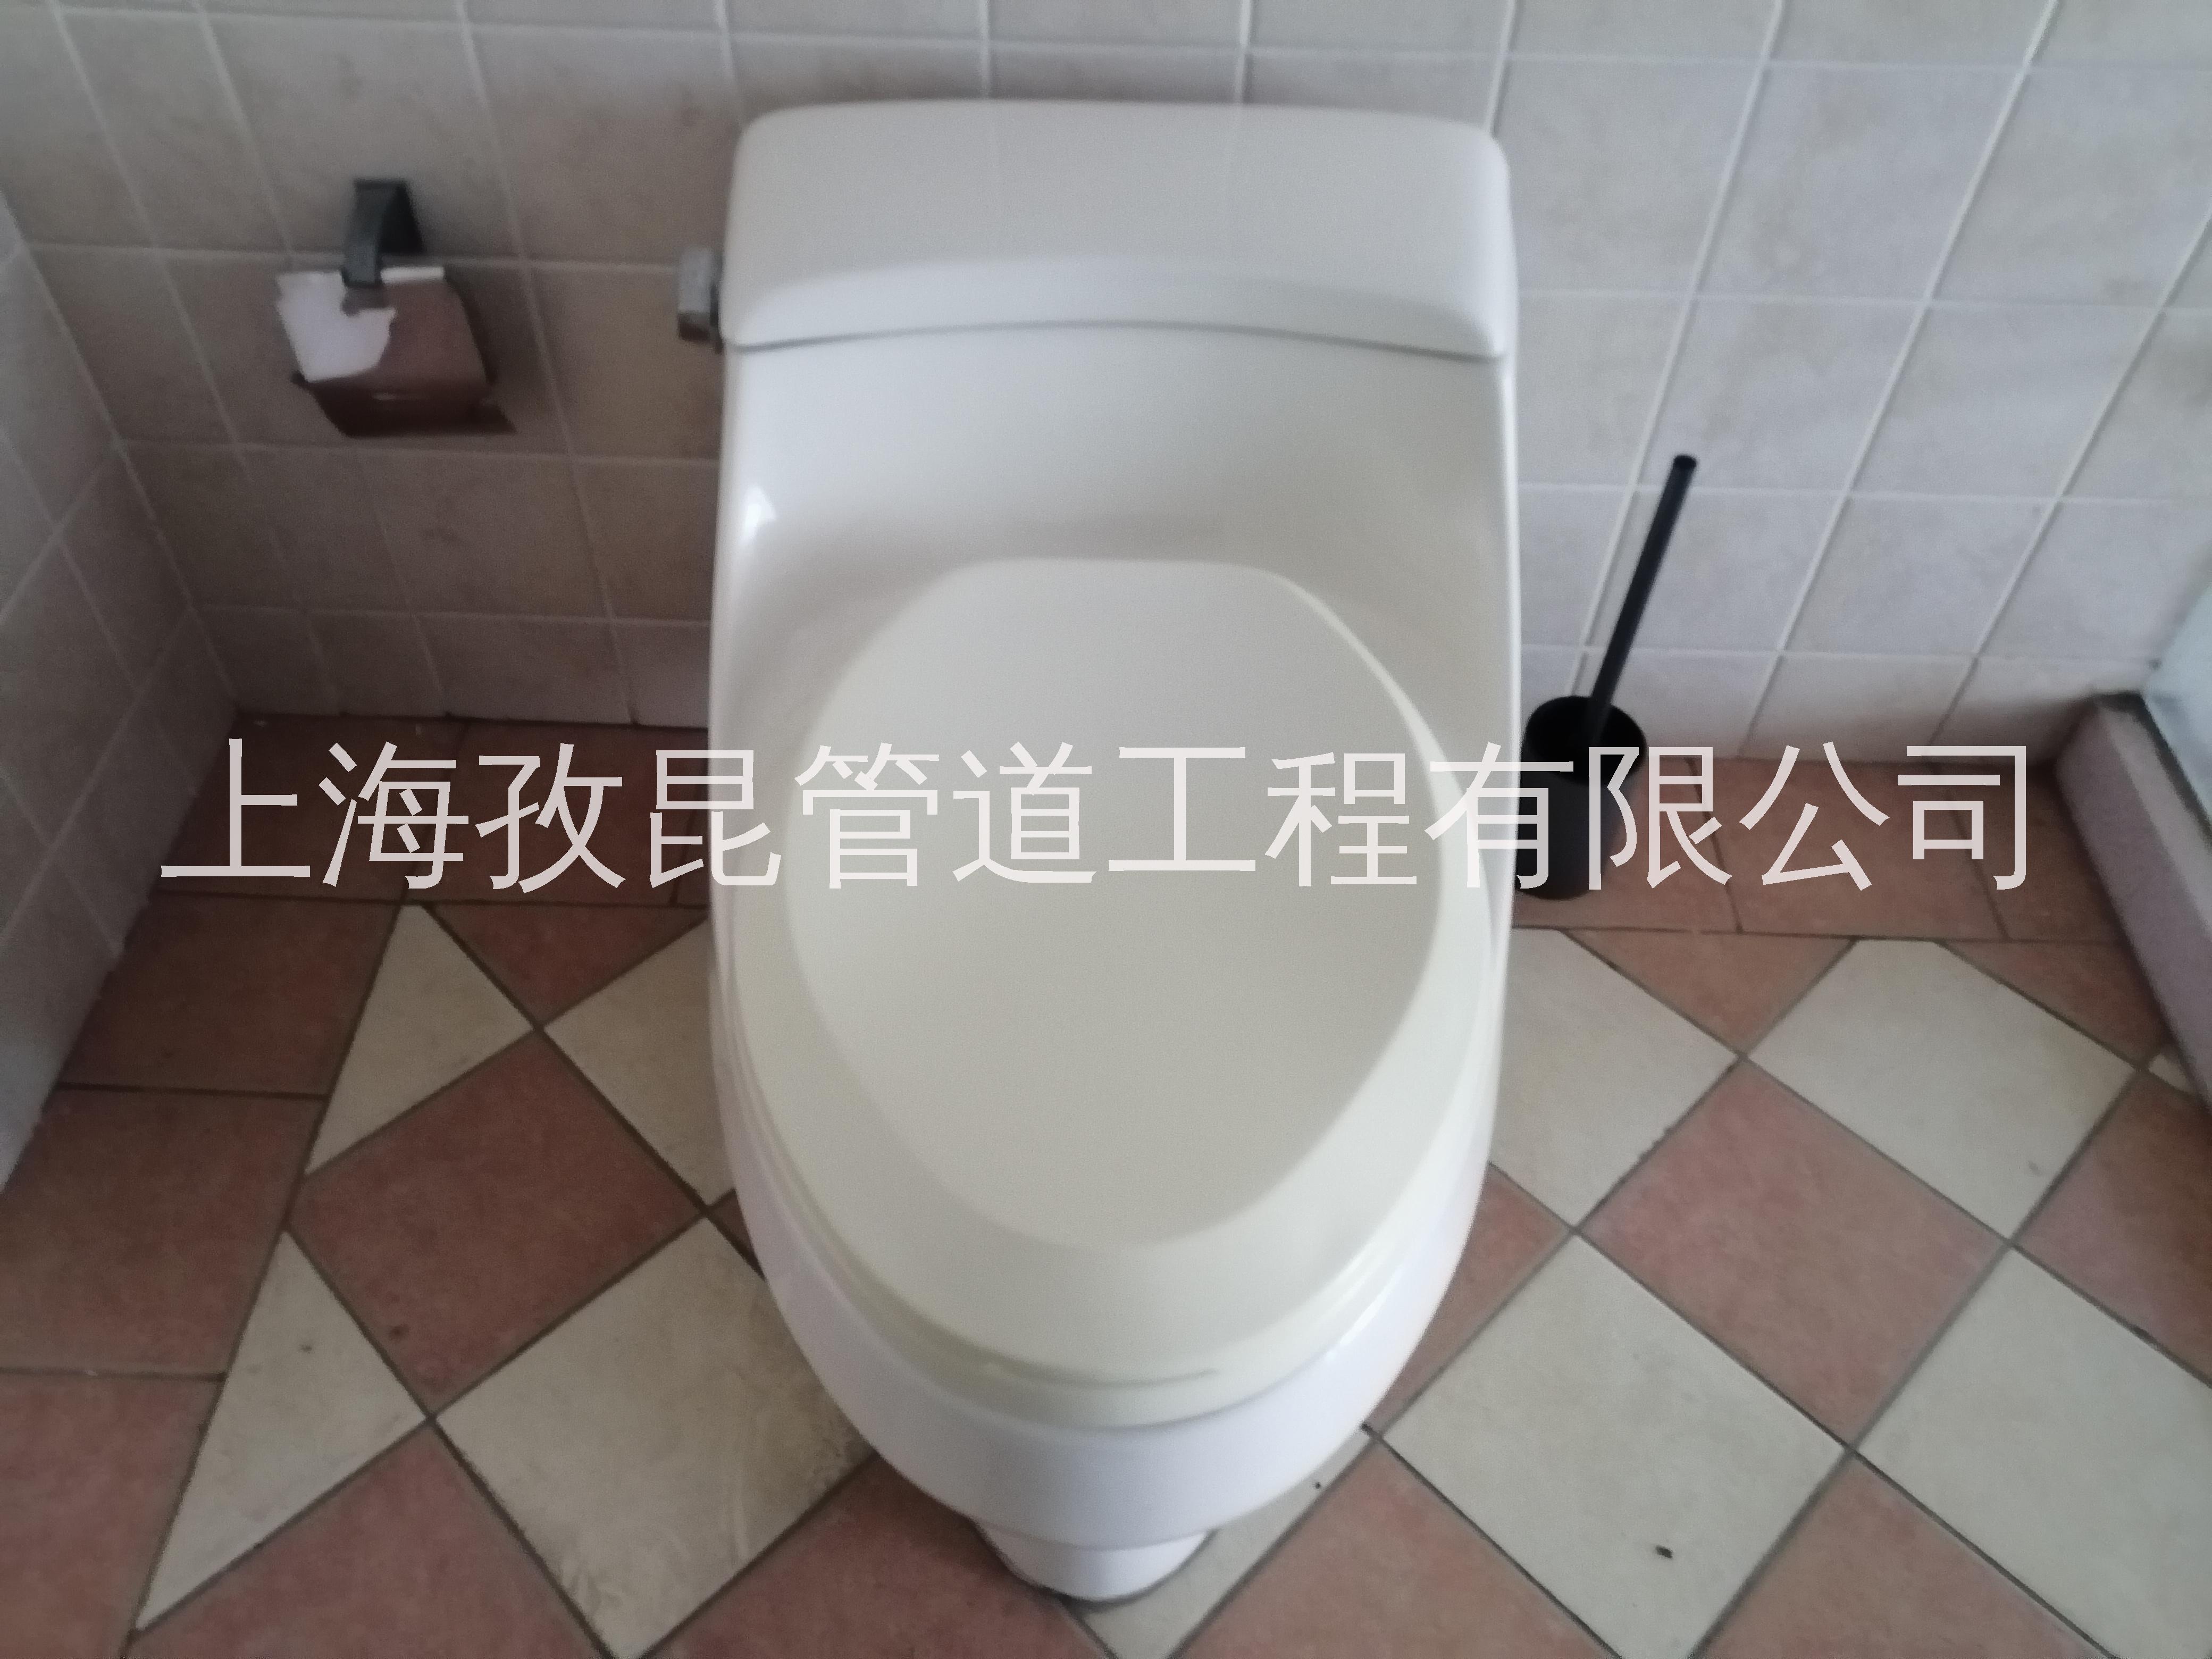 上海科勒马桶专业维修 安装修补 智能马桶维修电话 洗手盆安装 维修服务